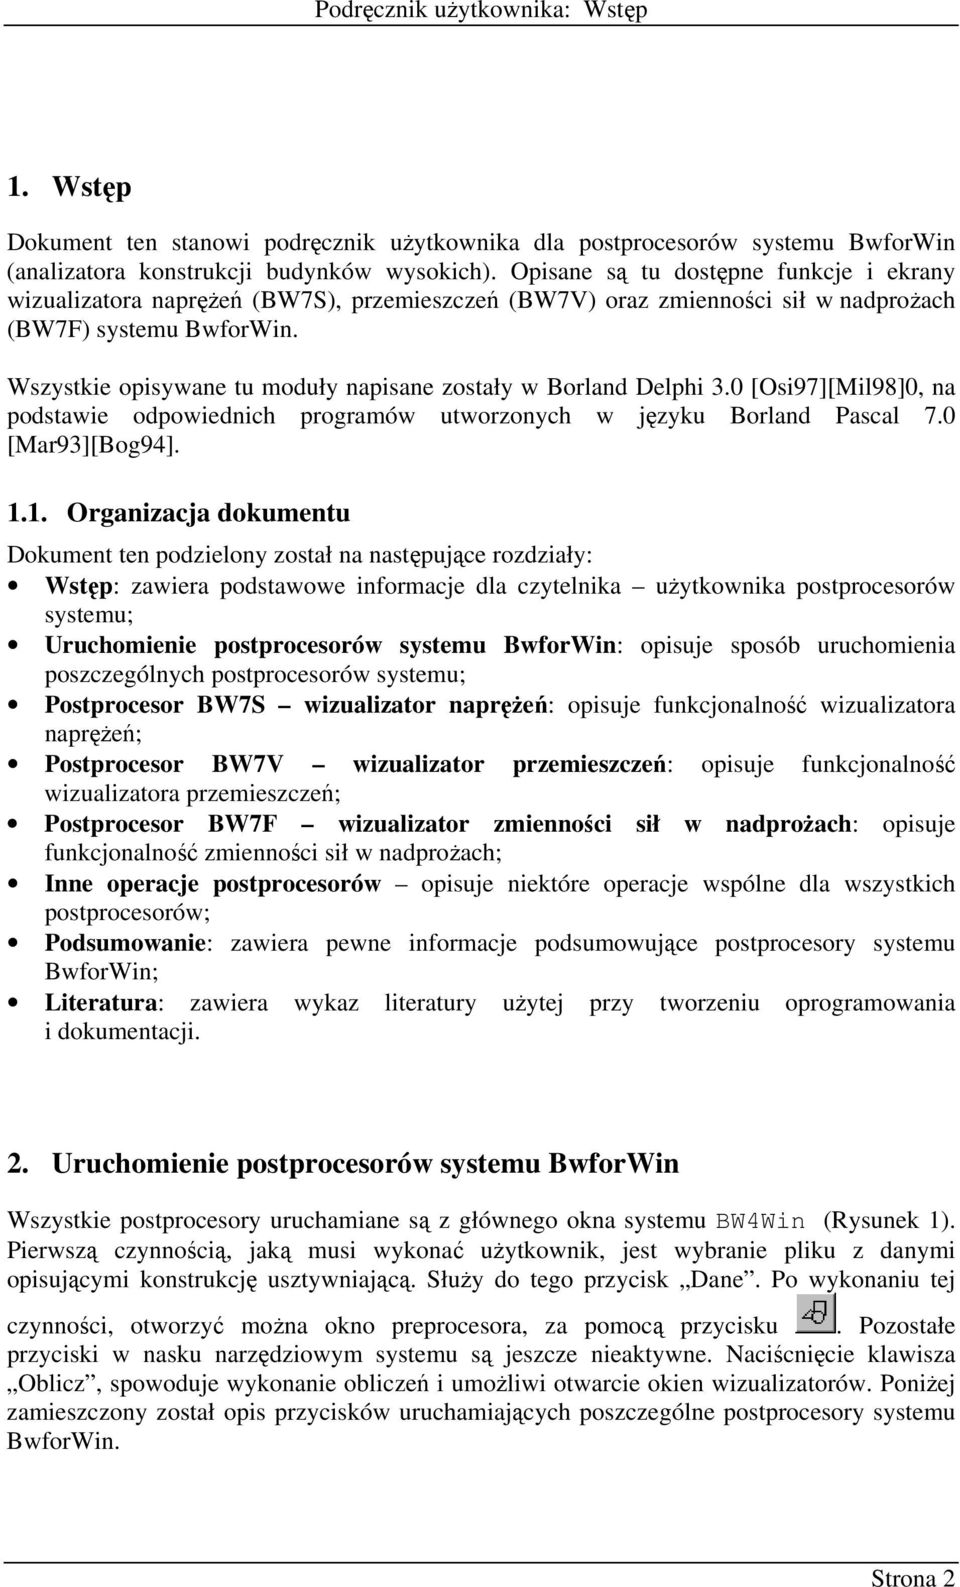 Wszystkie opisywane tu moduły napisane zostały w Borland Delphi 3.0 [Osi97][Mil98]0, na podstawie odpowiednich programów utworzonych w języku Borland Pascal 7.0 [Mar93][Bog94]. 1.